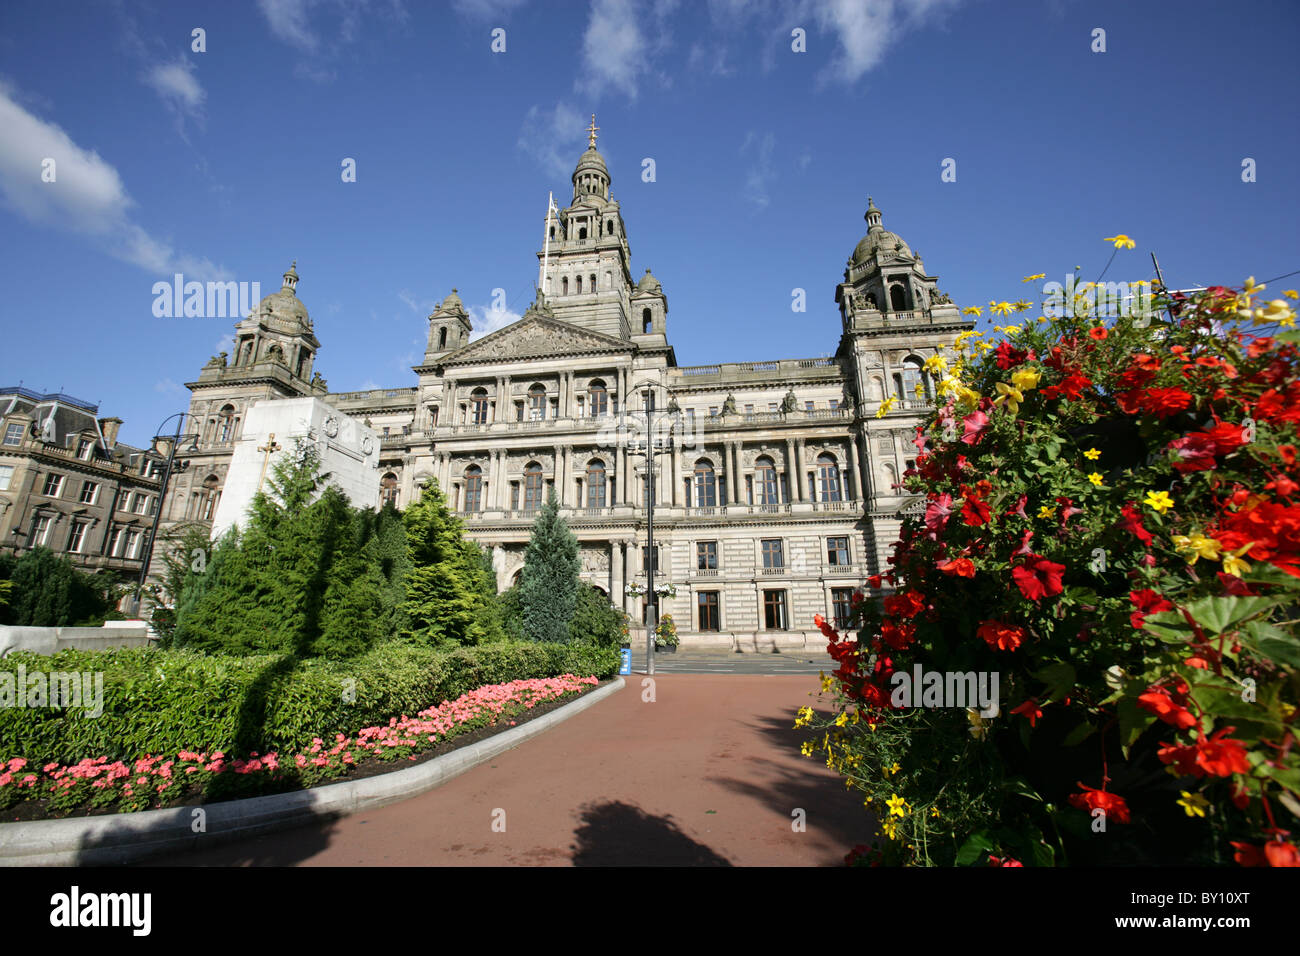 Stadt in Glasgow, Schottland. Malerische Sommer Blick auf George Square mit dem Kenotaph City Chambers im Hintergrund. Stockfoto